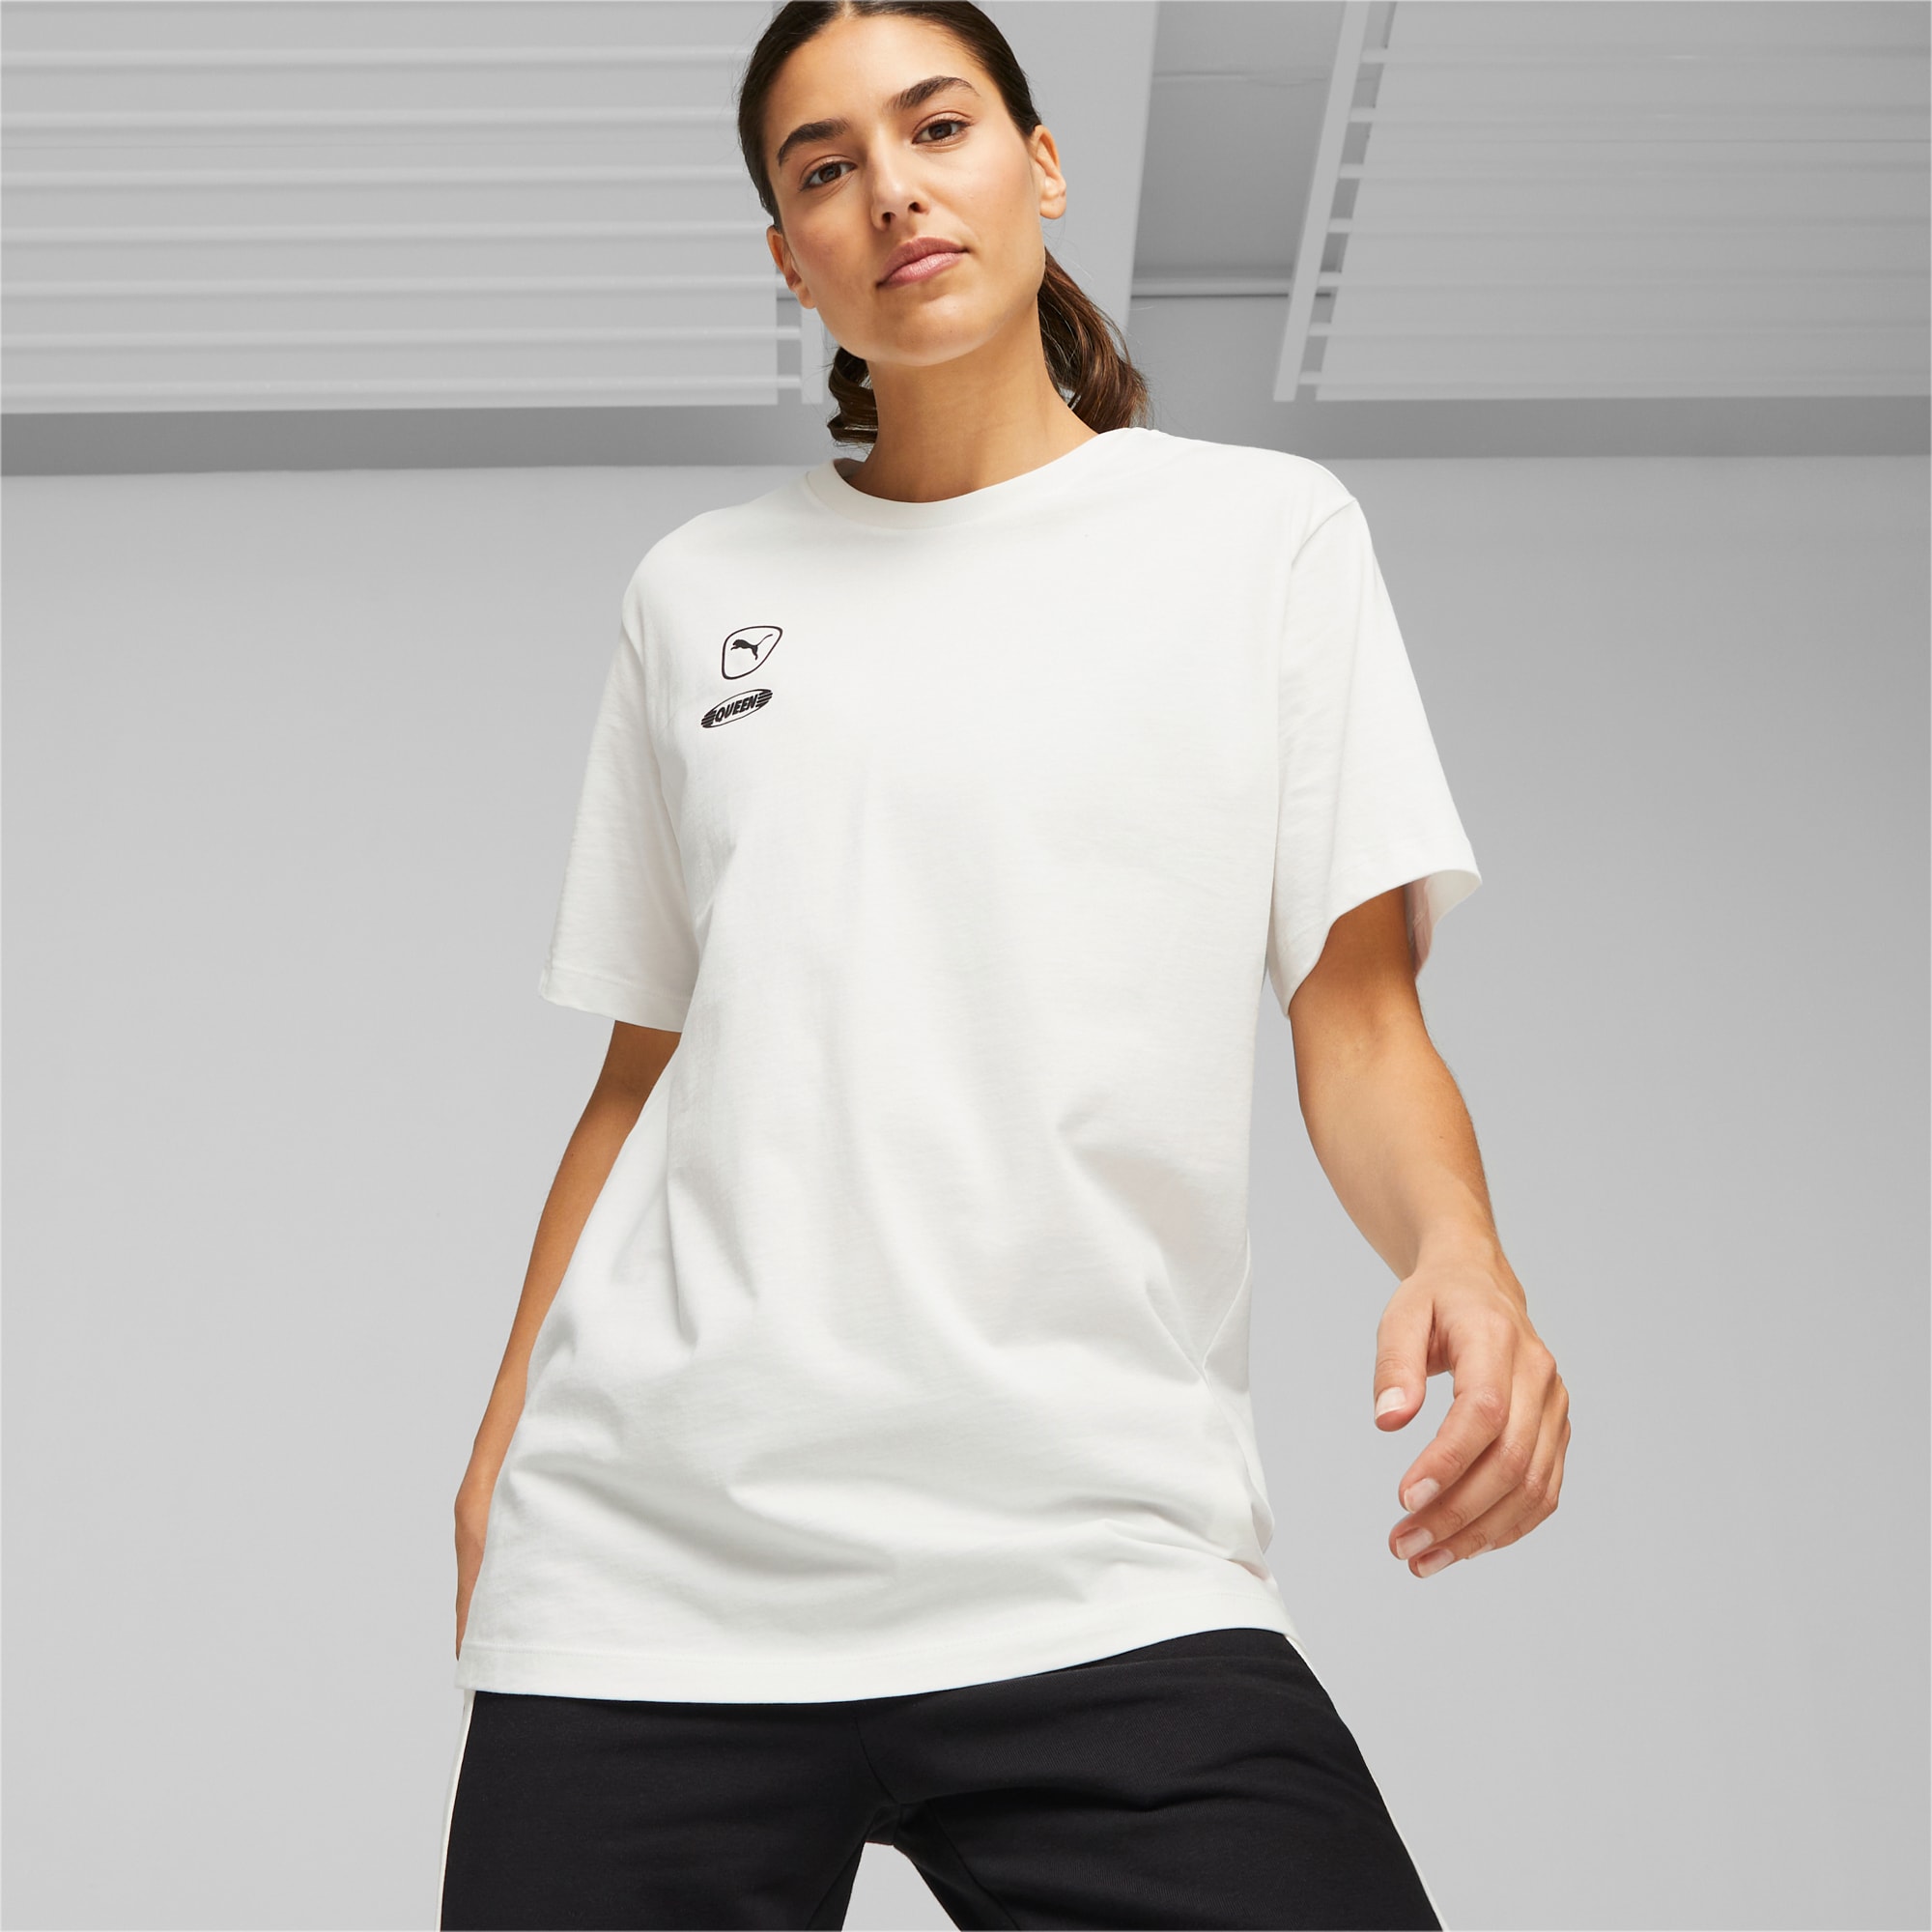 PUMA Queen Voetbal T-shirt Voor Dames, Zwart/Wit